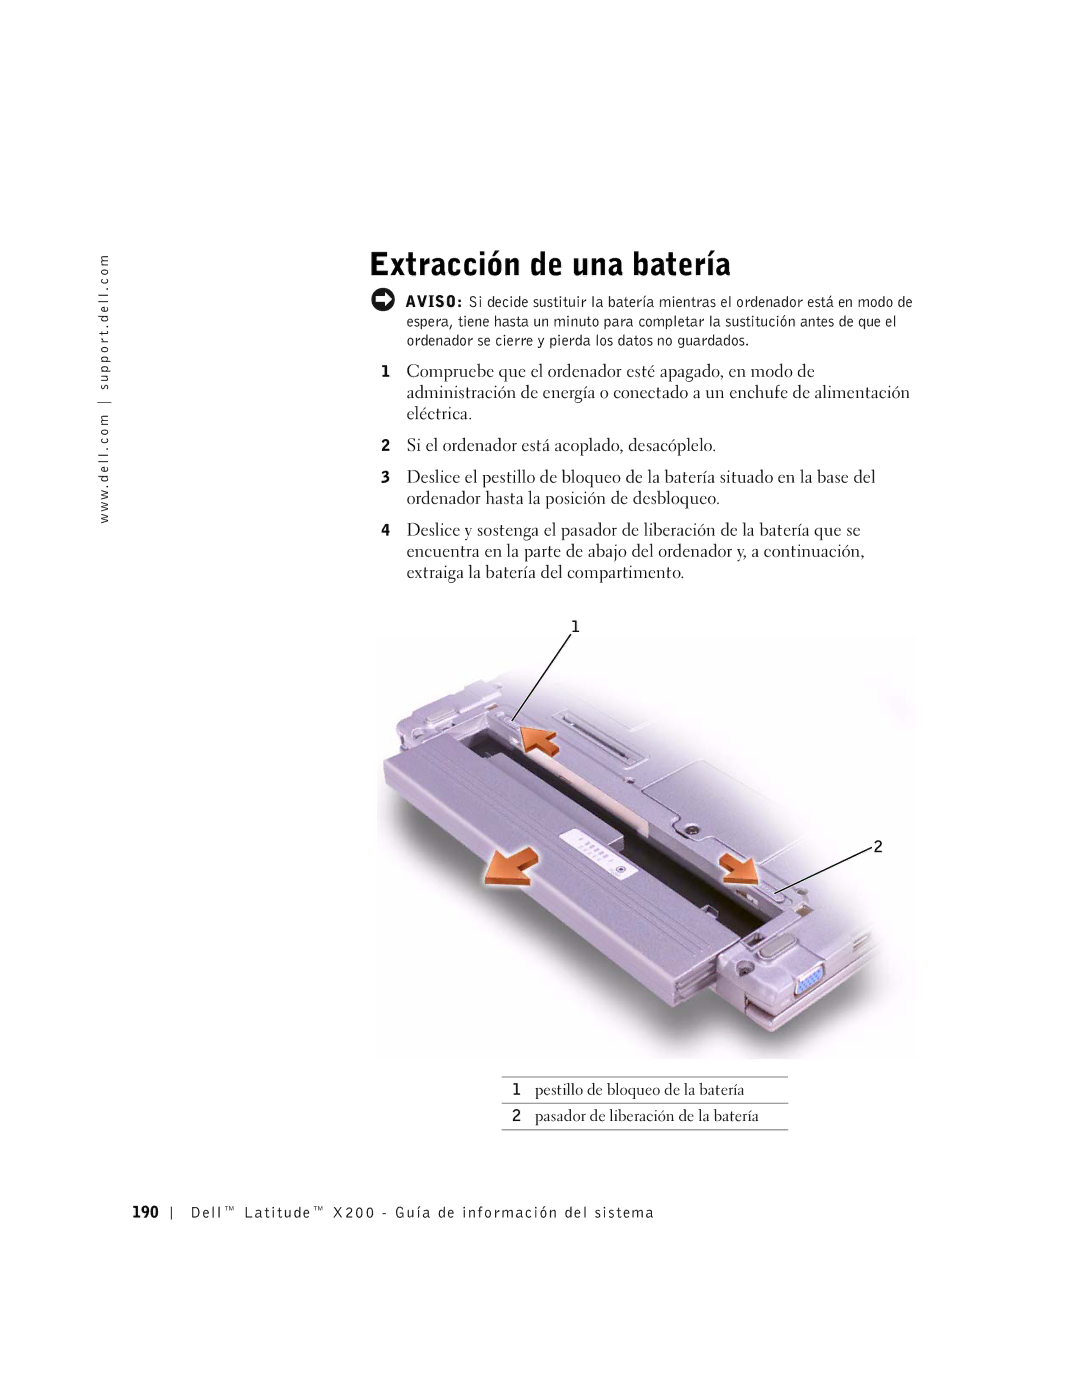 LeapFrog PP03S manual Extracción de una batería, Dell Latitude X200 Guía de información del sistema 